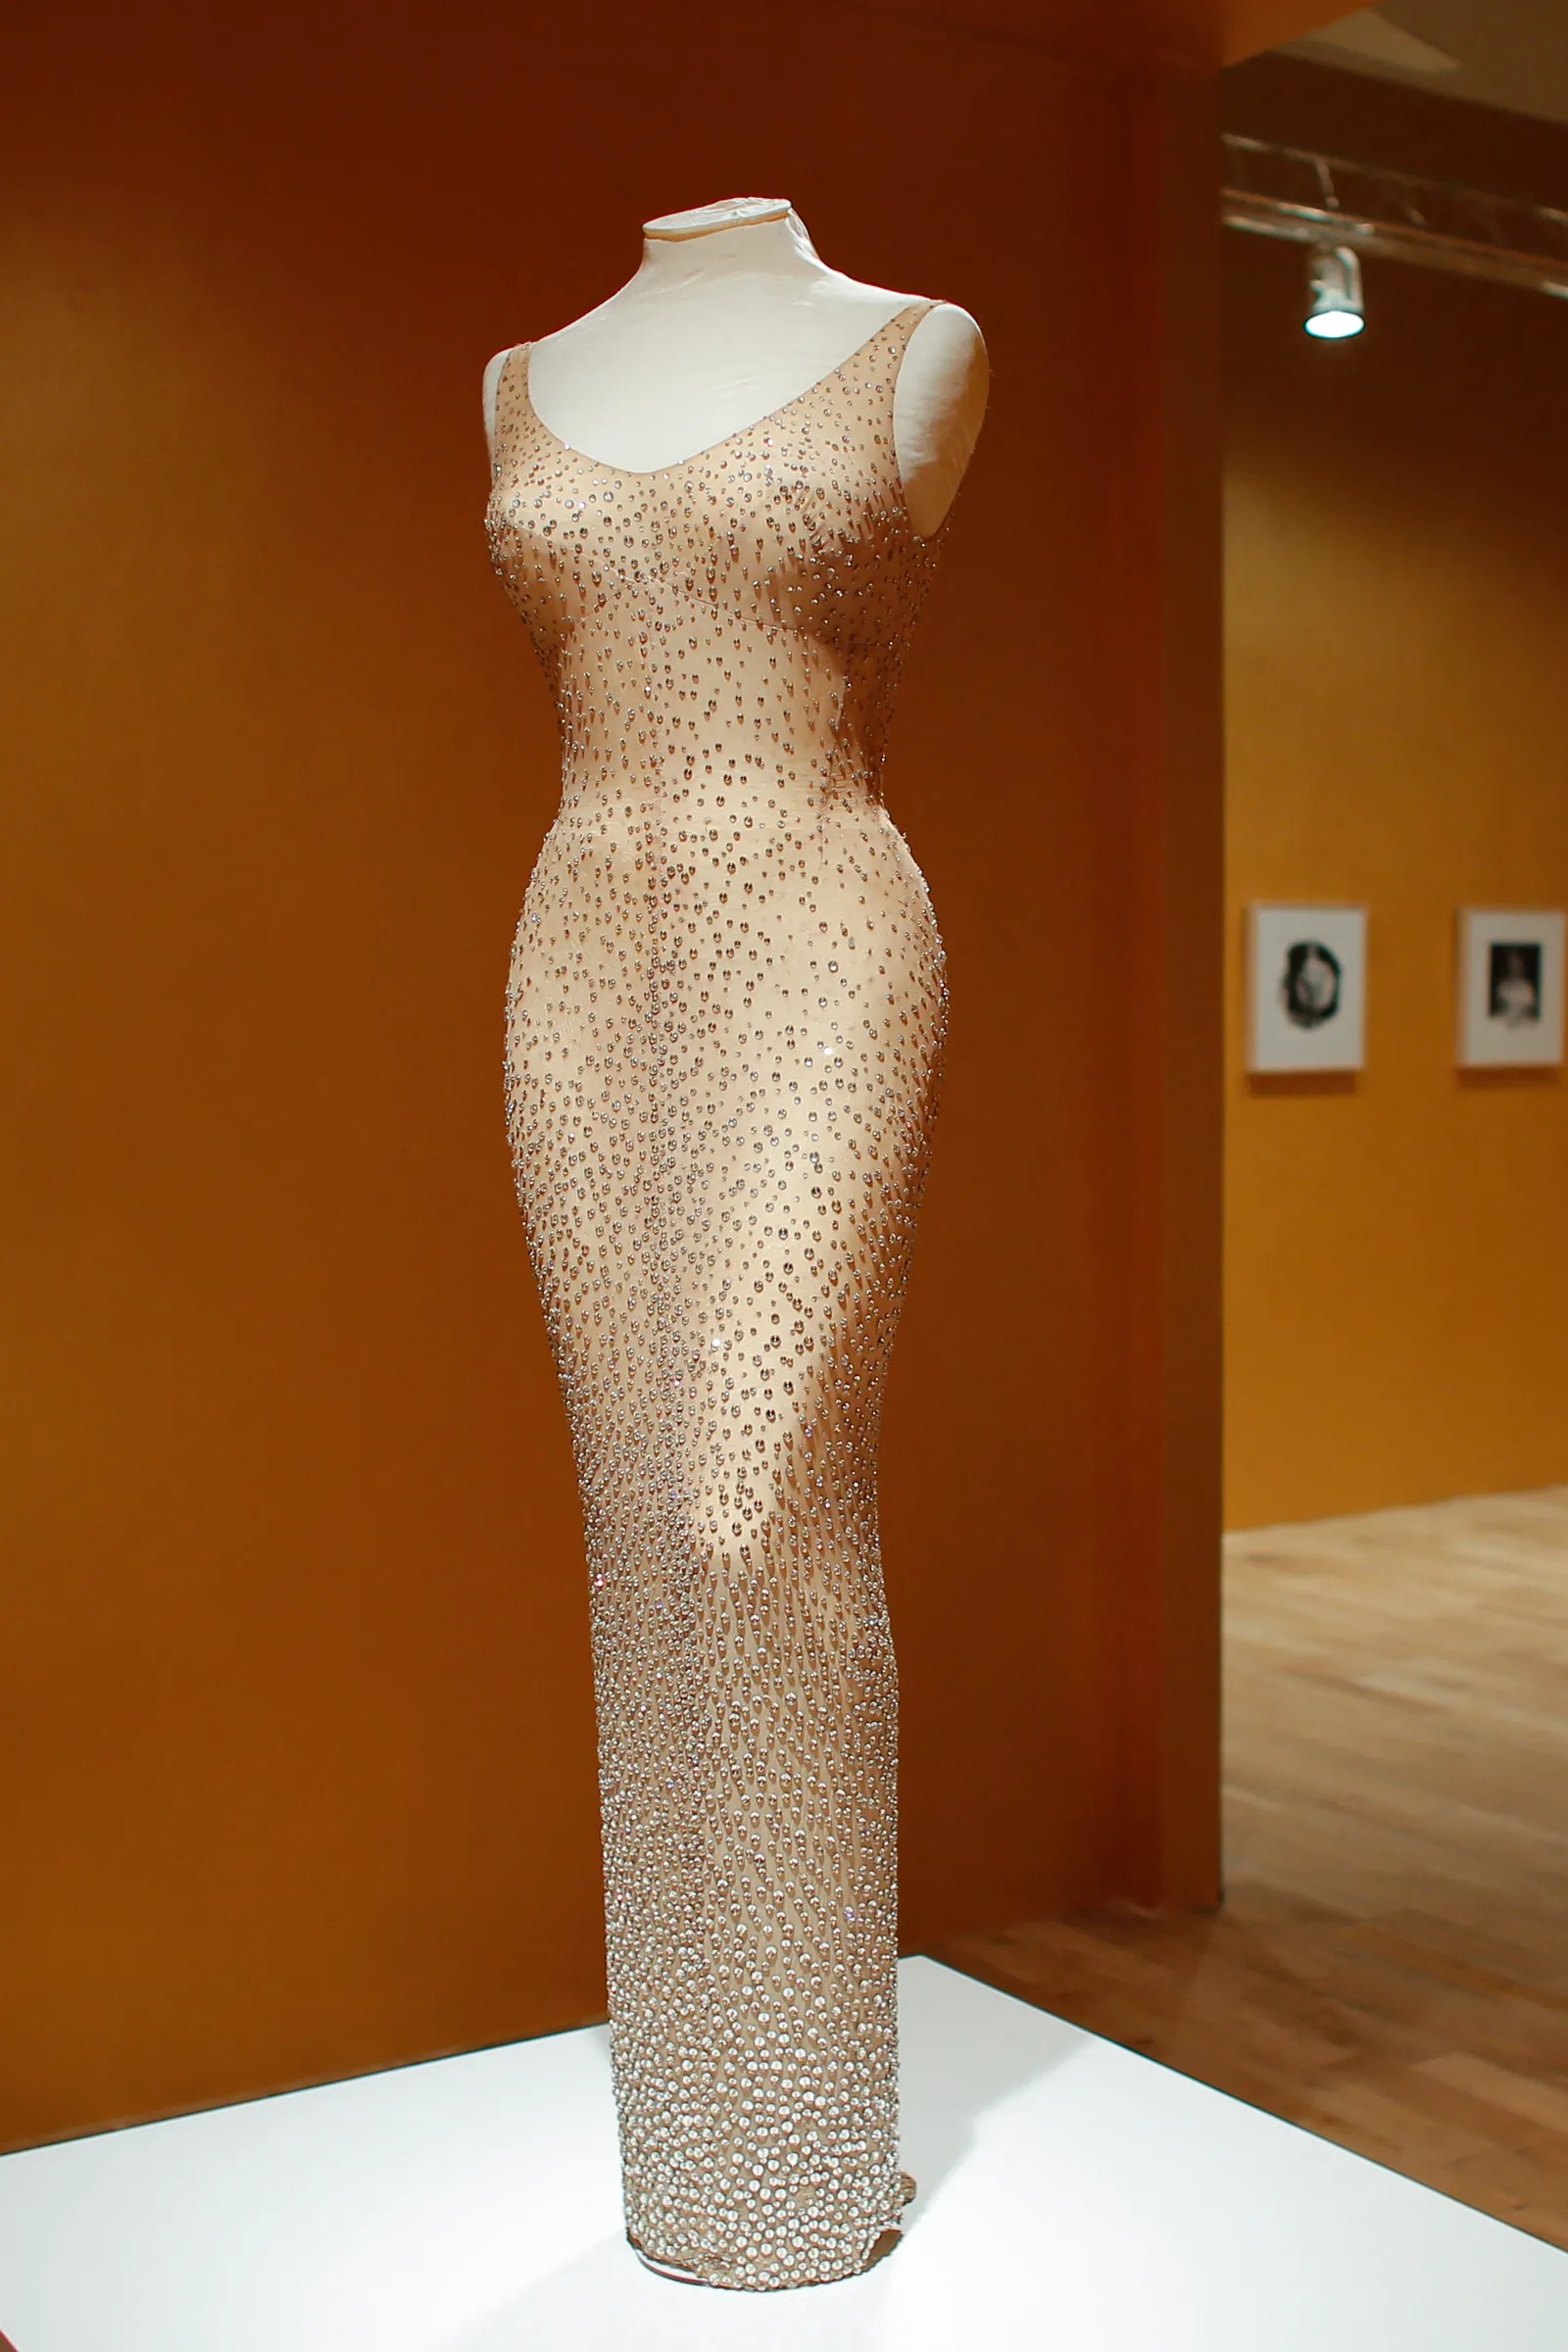 váy Marilyn Monroe được trưng bày trong bảo tàng Ripley